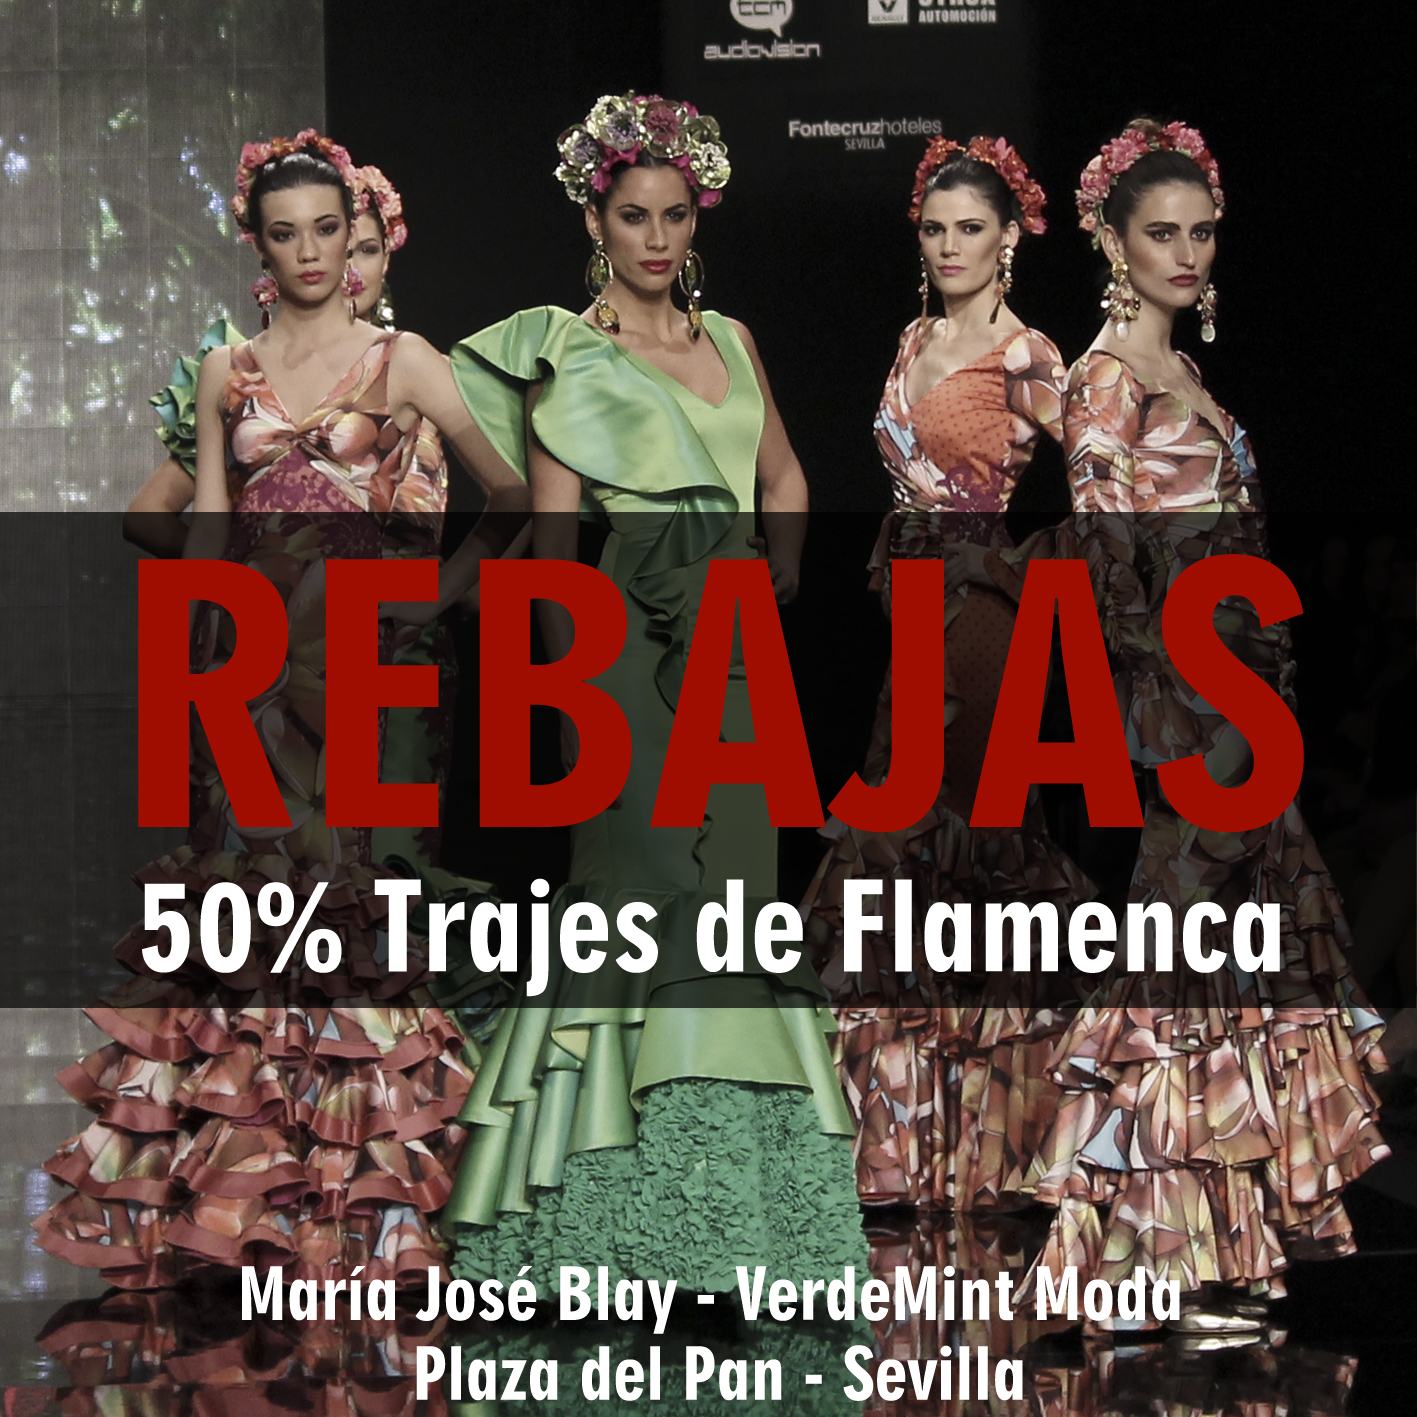 Paleto He aprendido Valiente María José Blay – Diseñadora » REBAJAS Flamencas en María José Blay